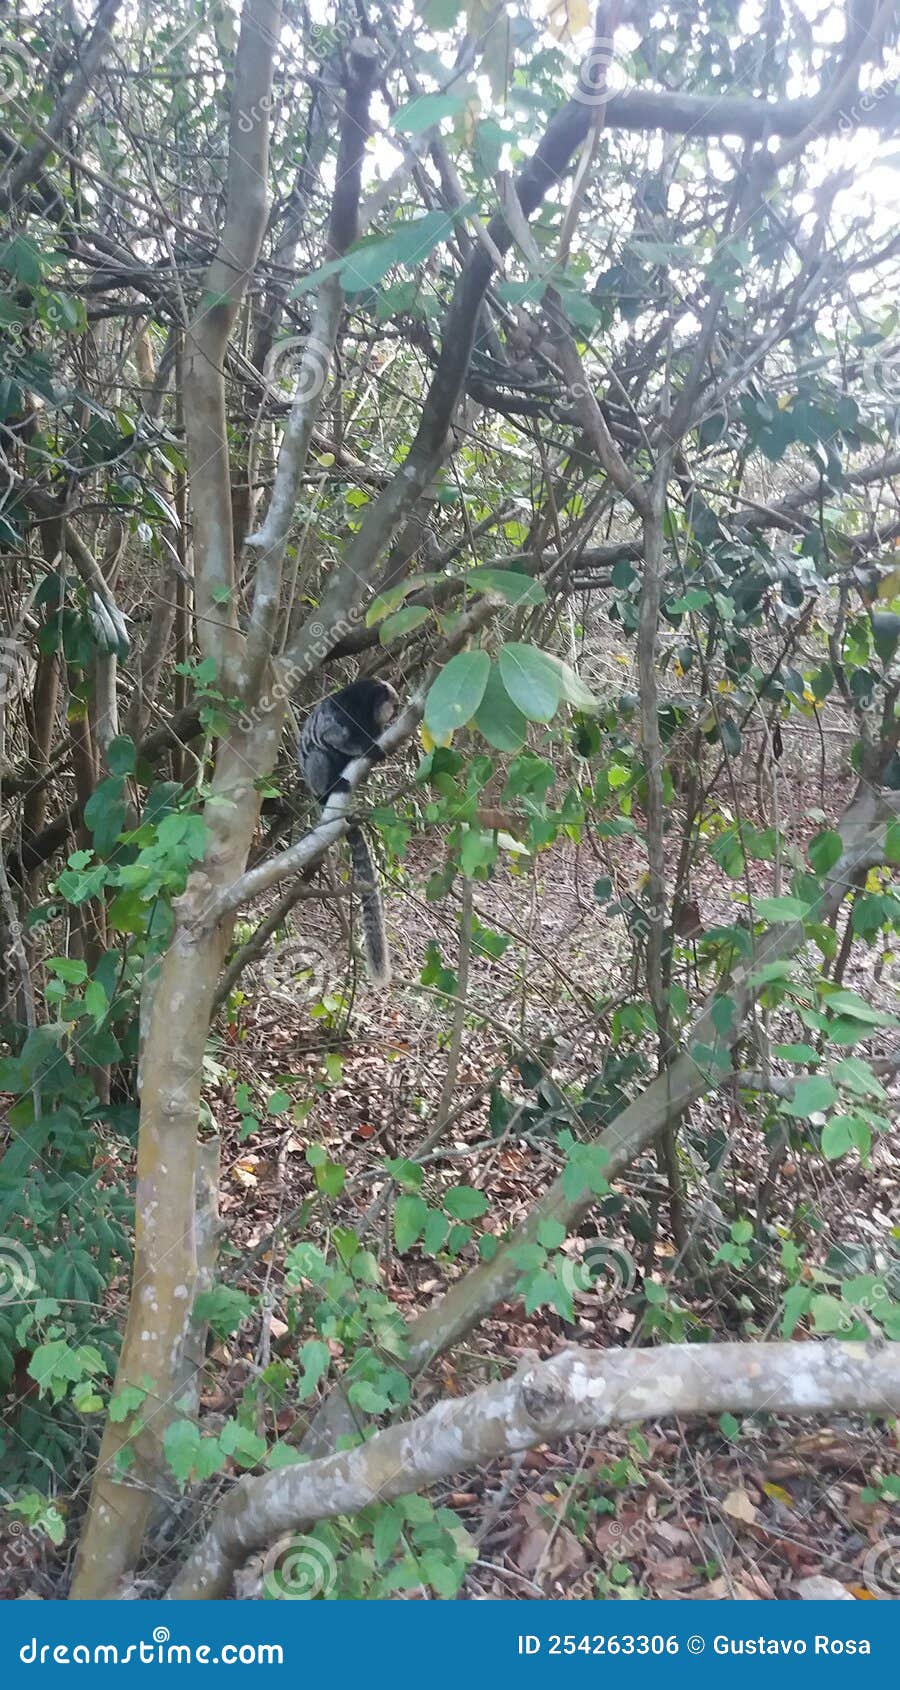 macaco na trilha do parque da pescaria, guarapari, espÃÂ­rito santo.